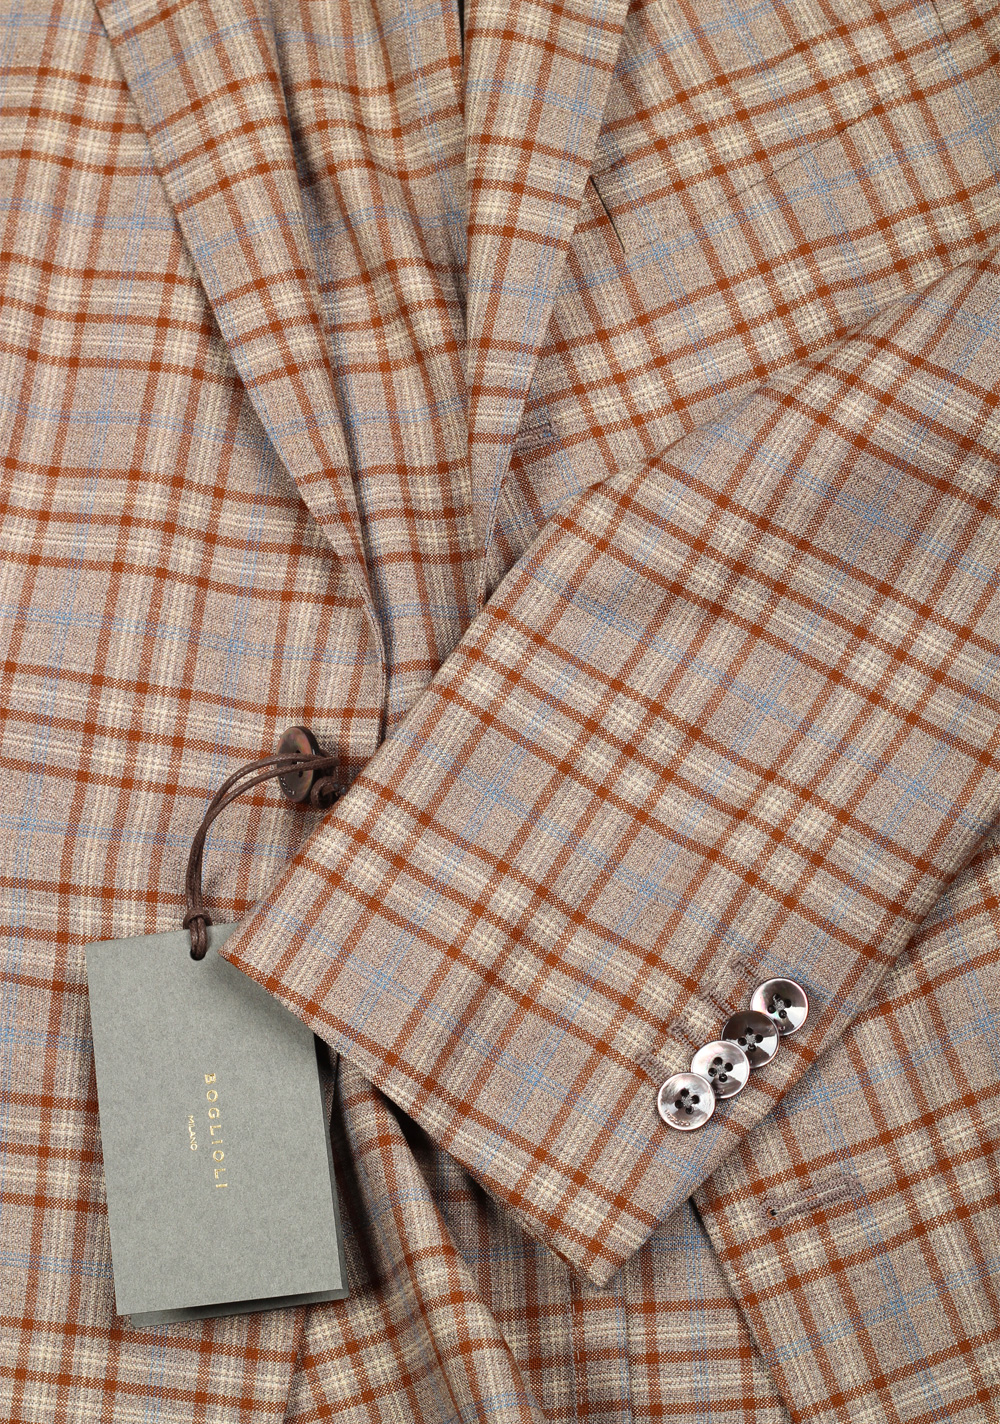 Boglioli K Jacket Brown Checked Suit Size 48 / 38R U.S. | Costume Limité